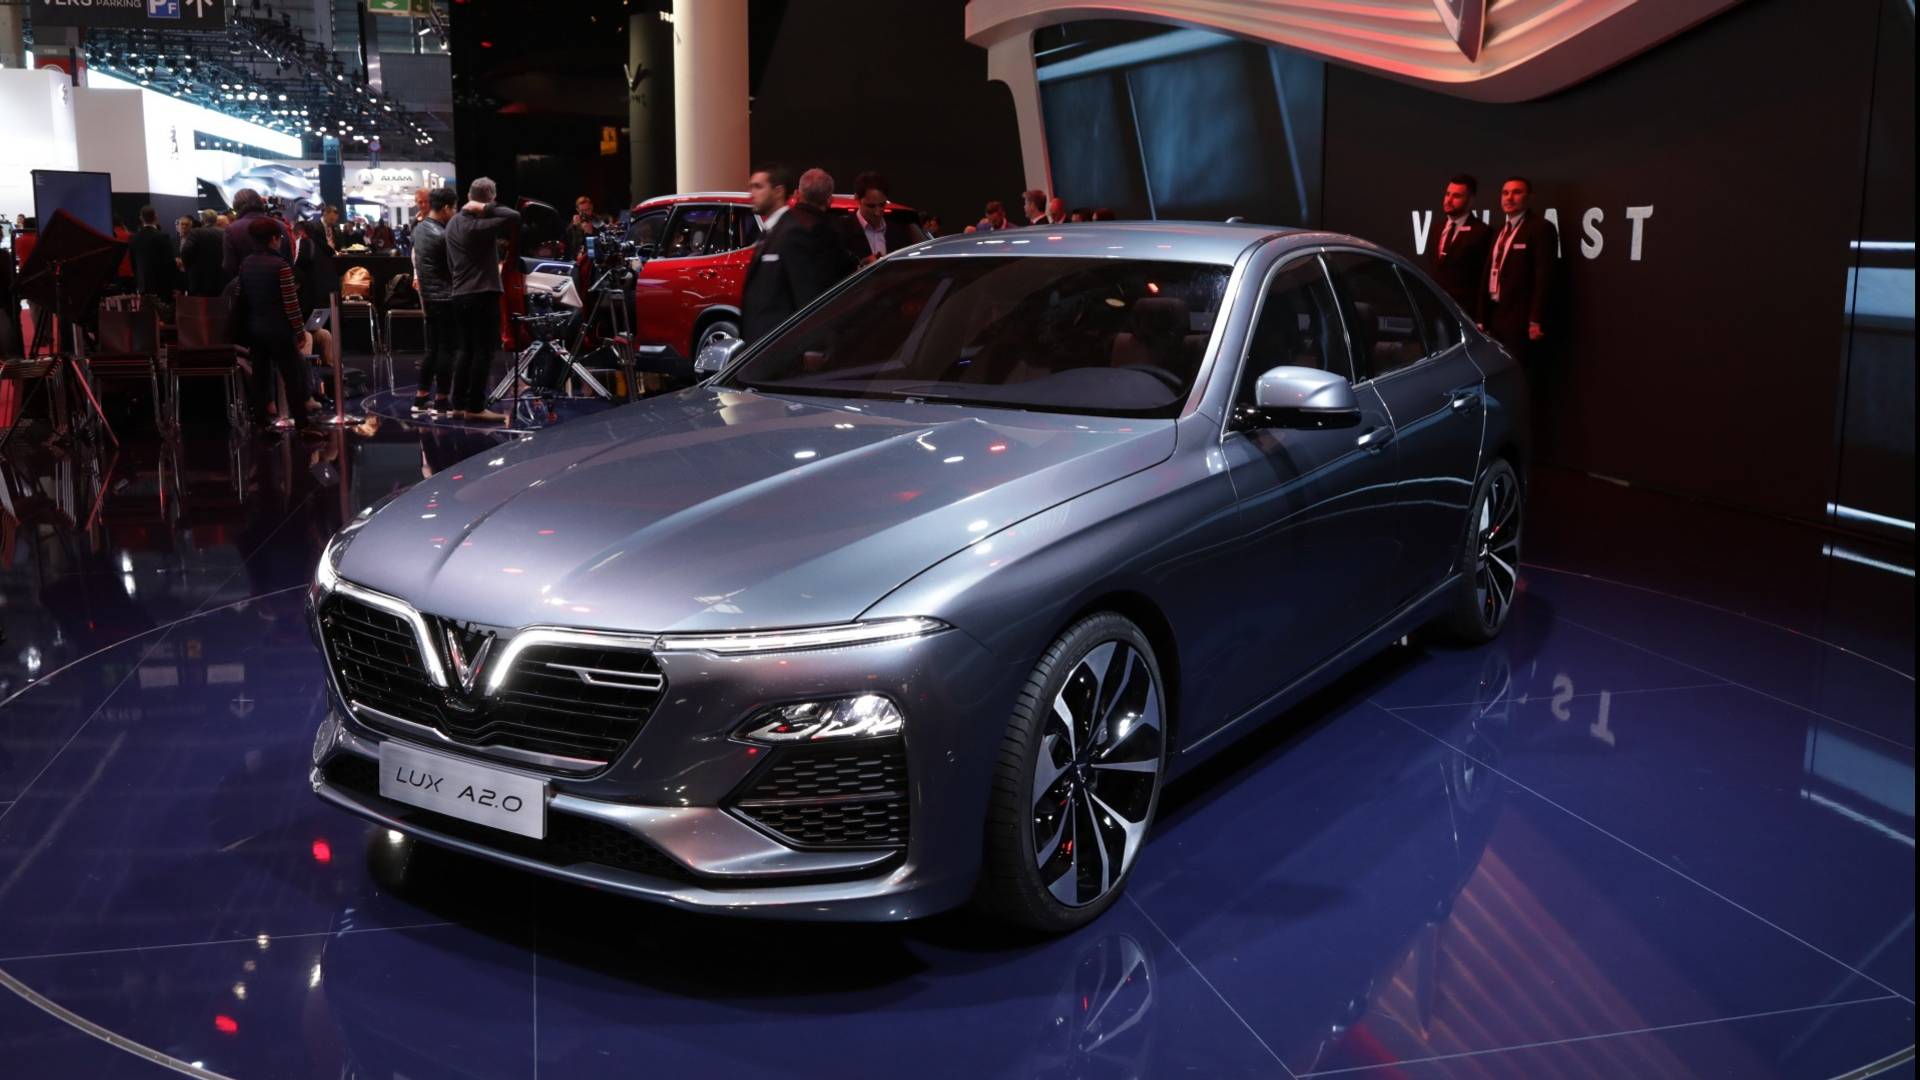 VinFast Sedan, SUV Debut In Paris With Italian Style, Big Plans